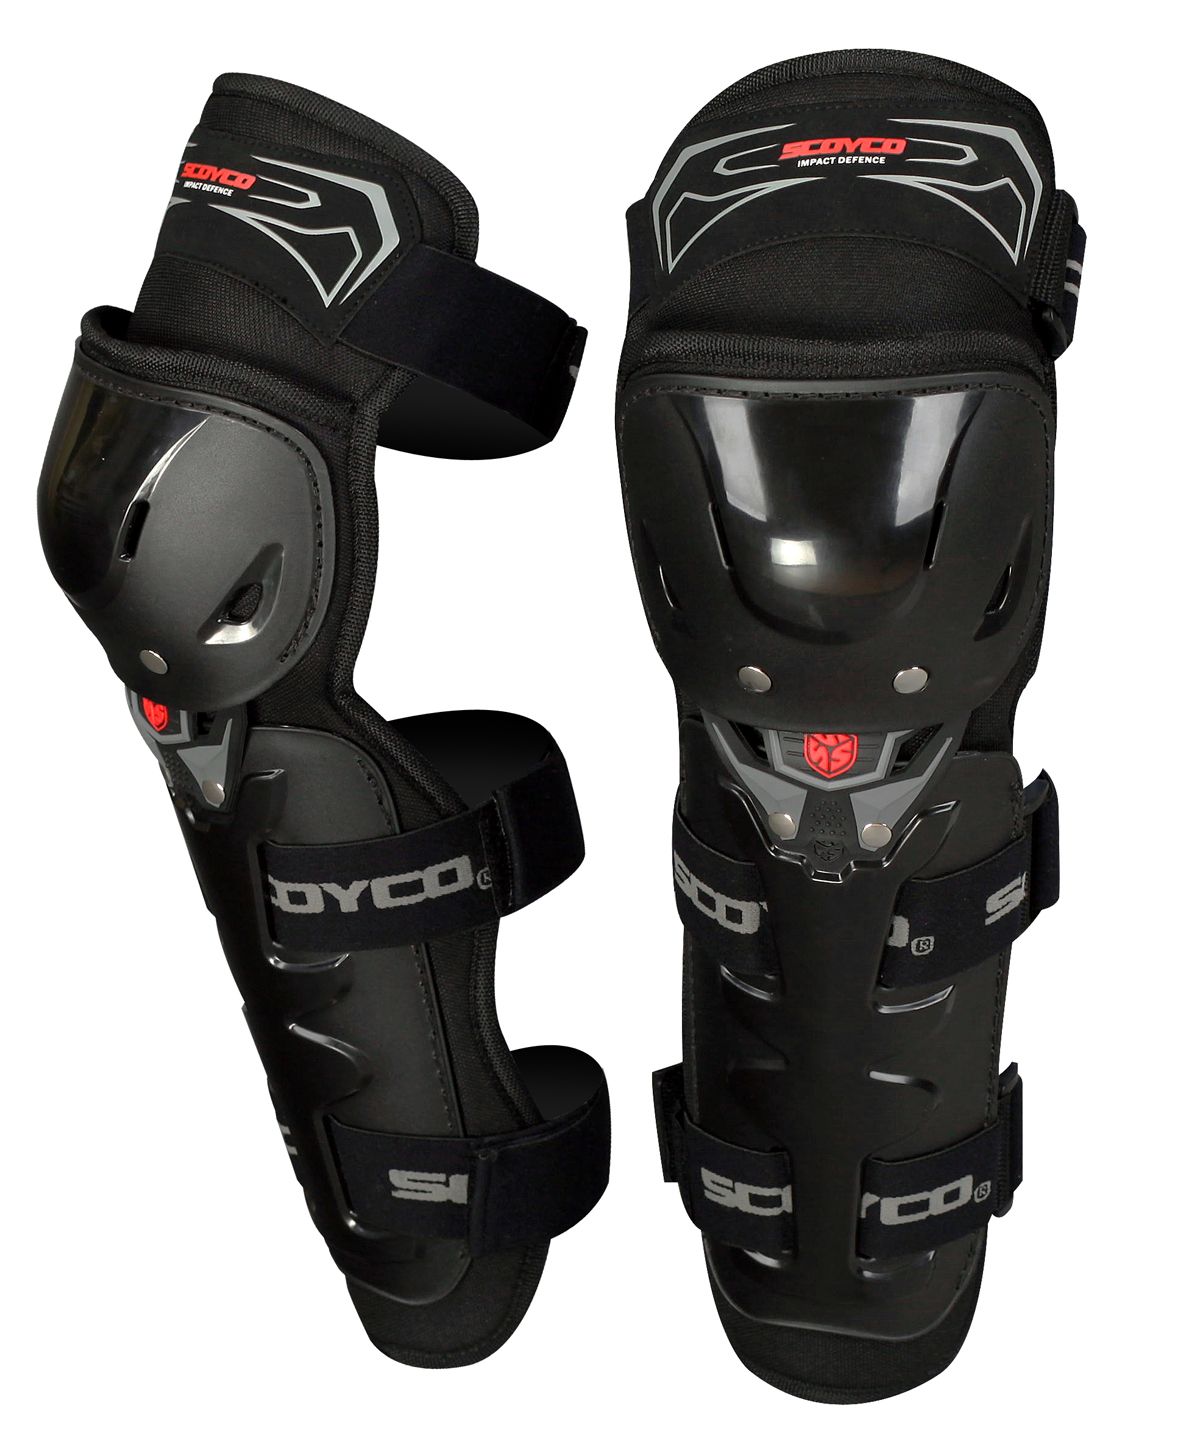 Webike Scoyco スコイコ 肘 膝プロテクターセット K11h11 2 肘プロテクター エルボーガード エルボーパッド 通販